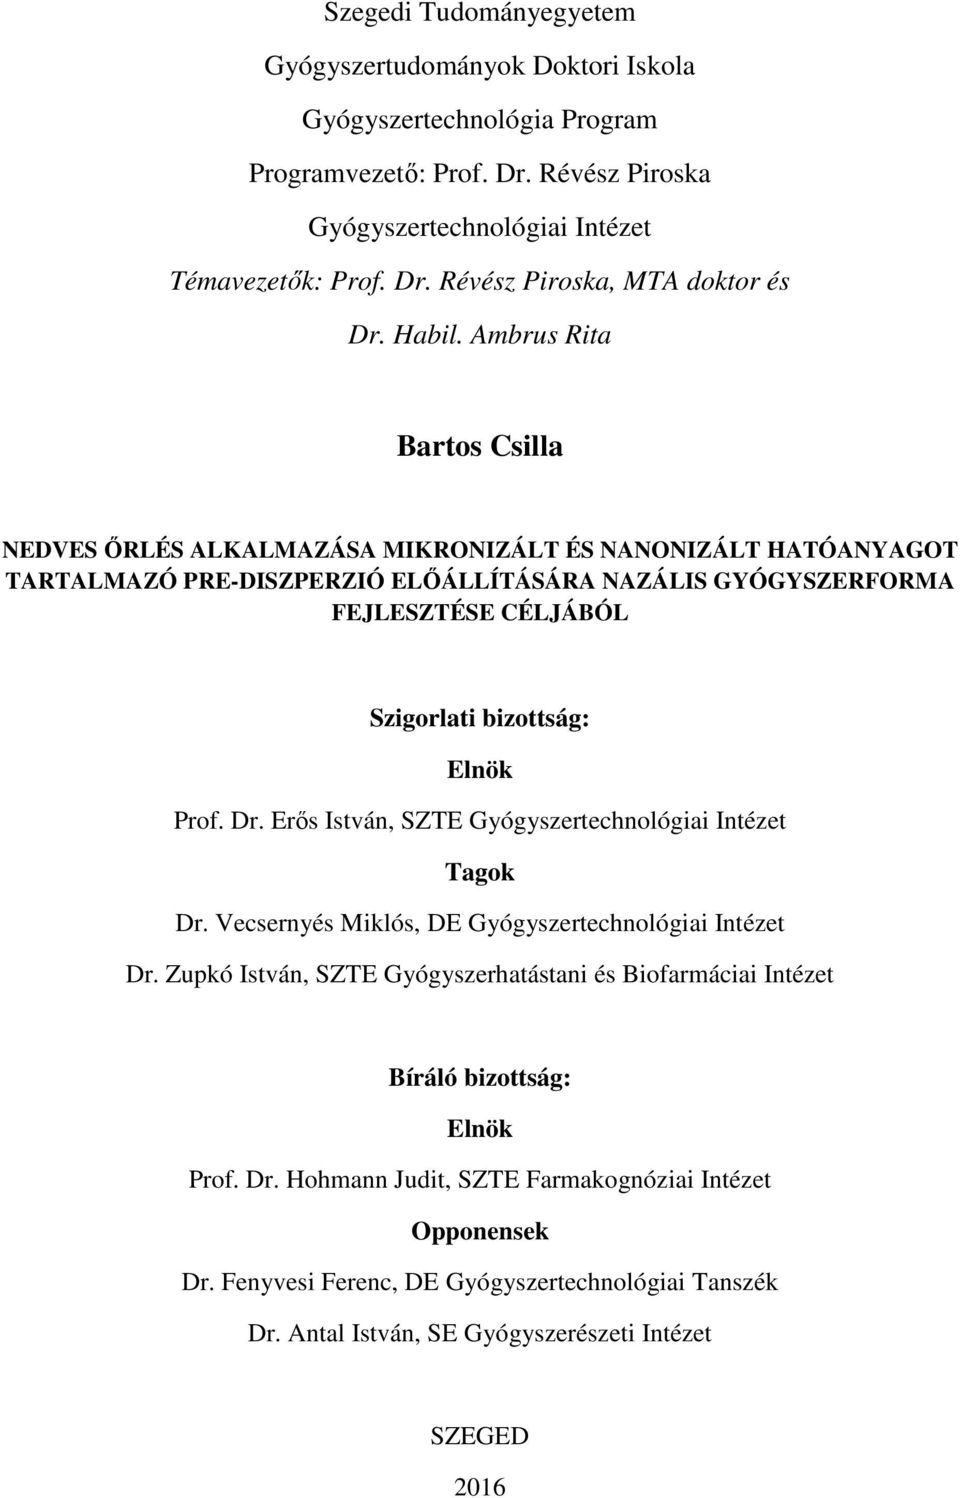 Szegedi Tudományegyetem. Gyógyszerésztudományi Kar. Gyógyszertechnológiai  Intézet. Ph.D. értekezés tézisei - PDF Free Download